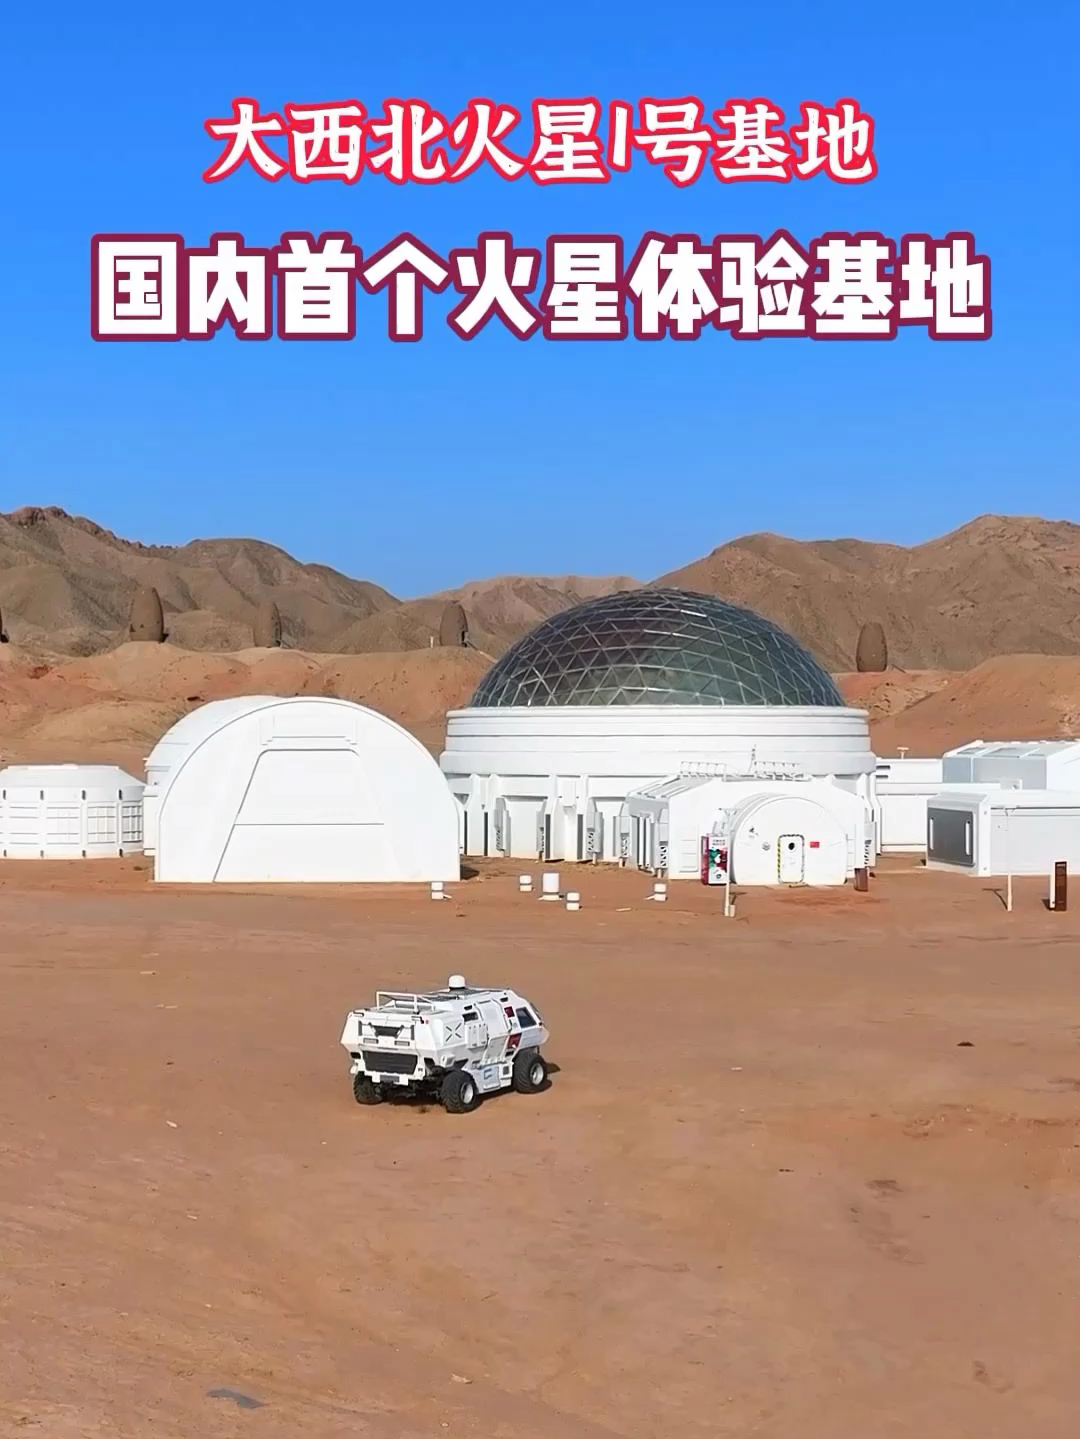 大西北金昌火星1号基地，国内首个火星主题体验基地